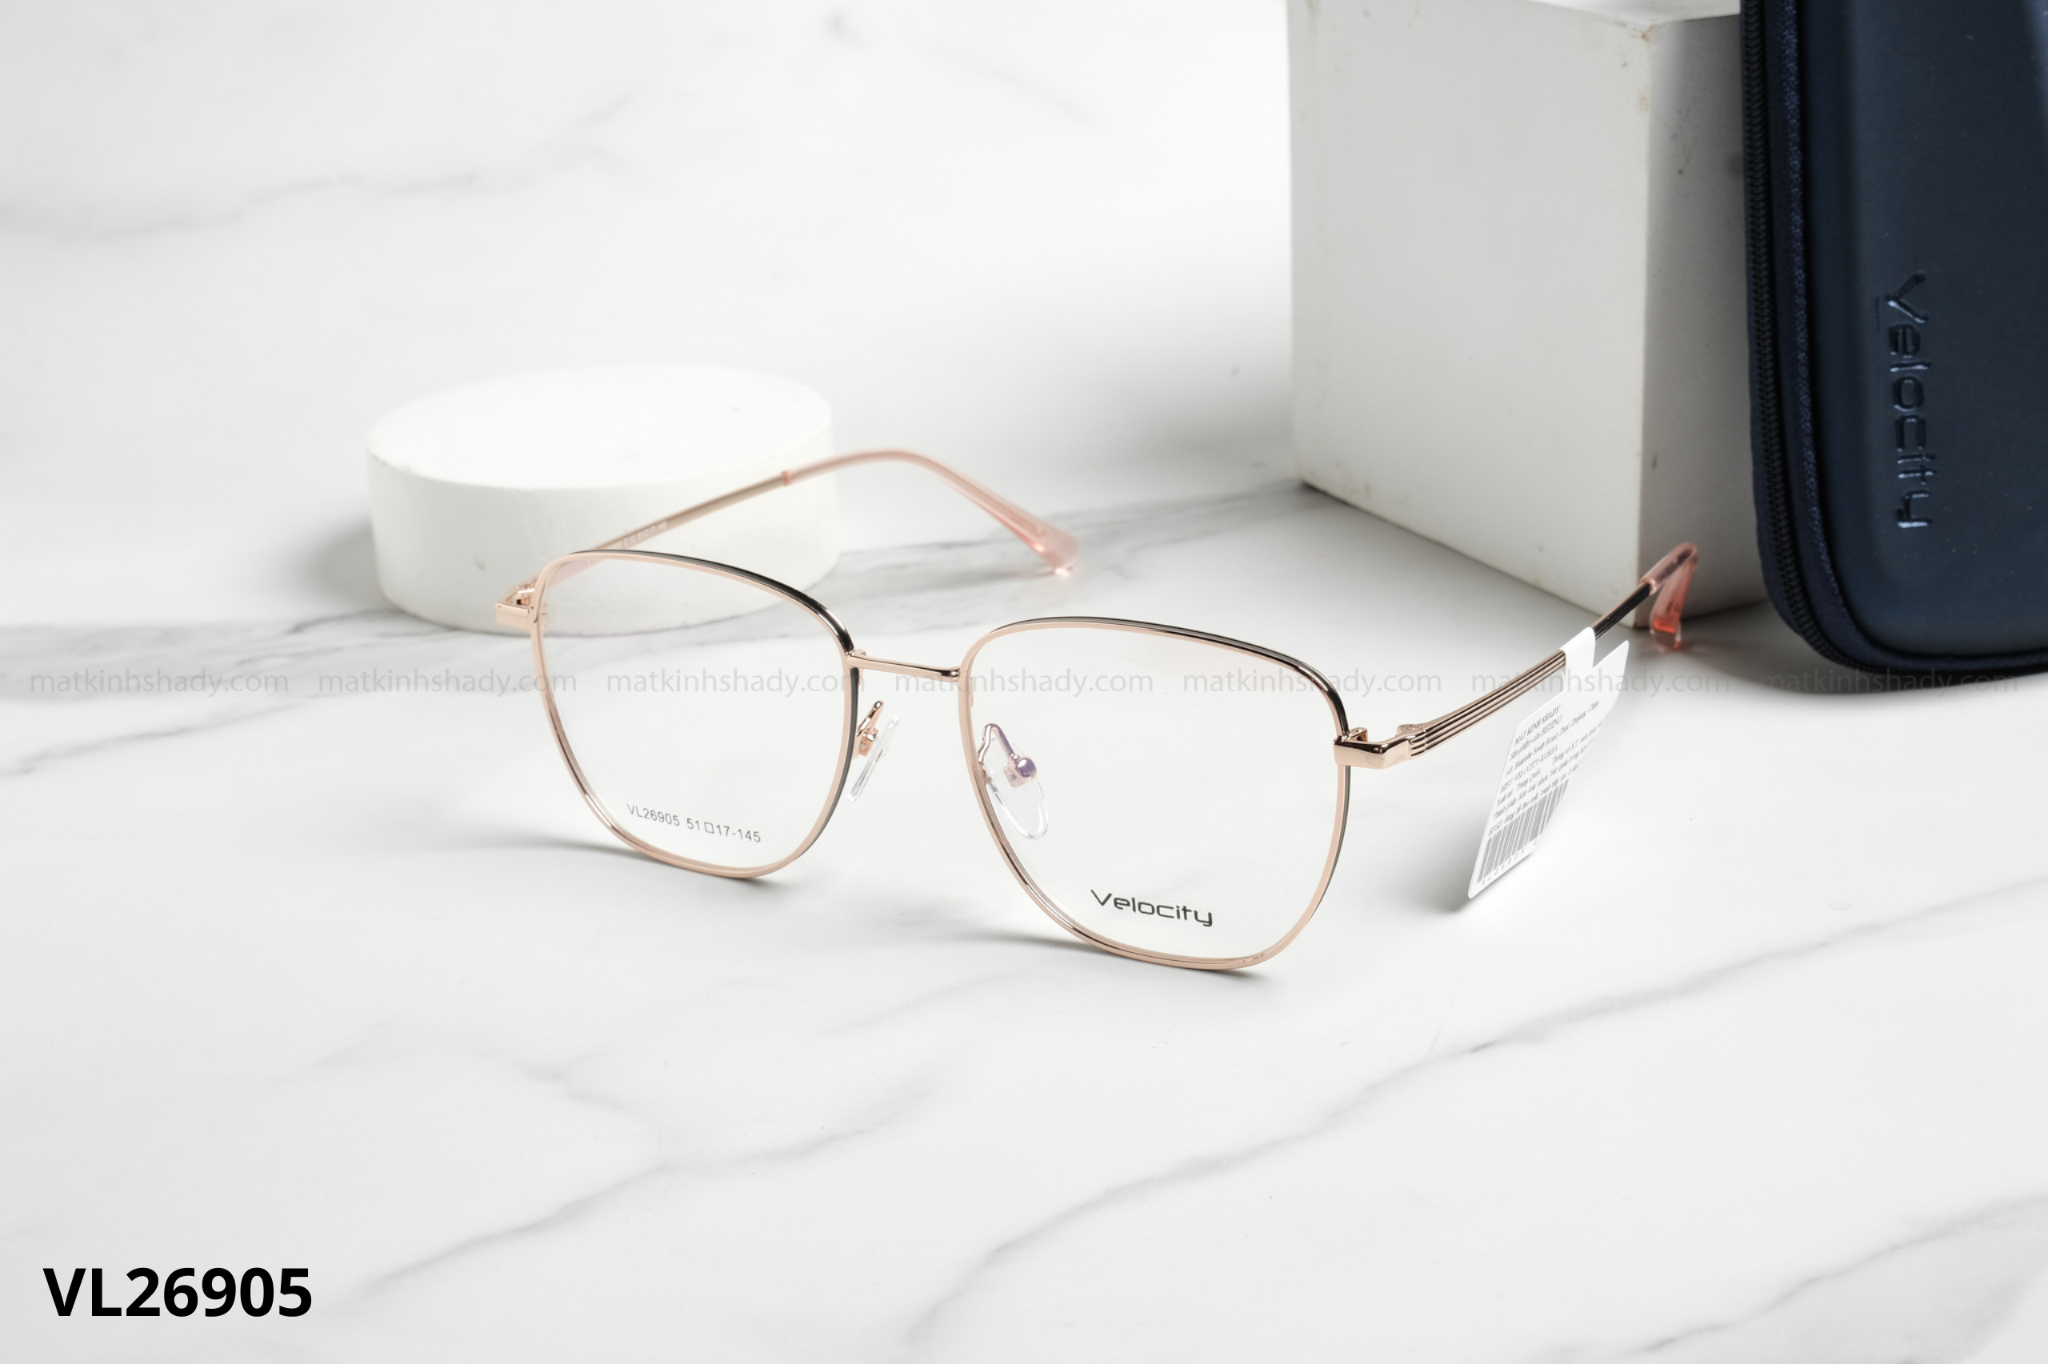  Velocity Eyewear - Glasses - VL26905 